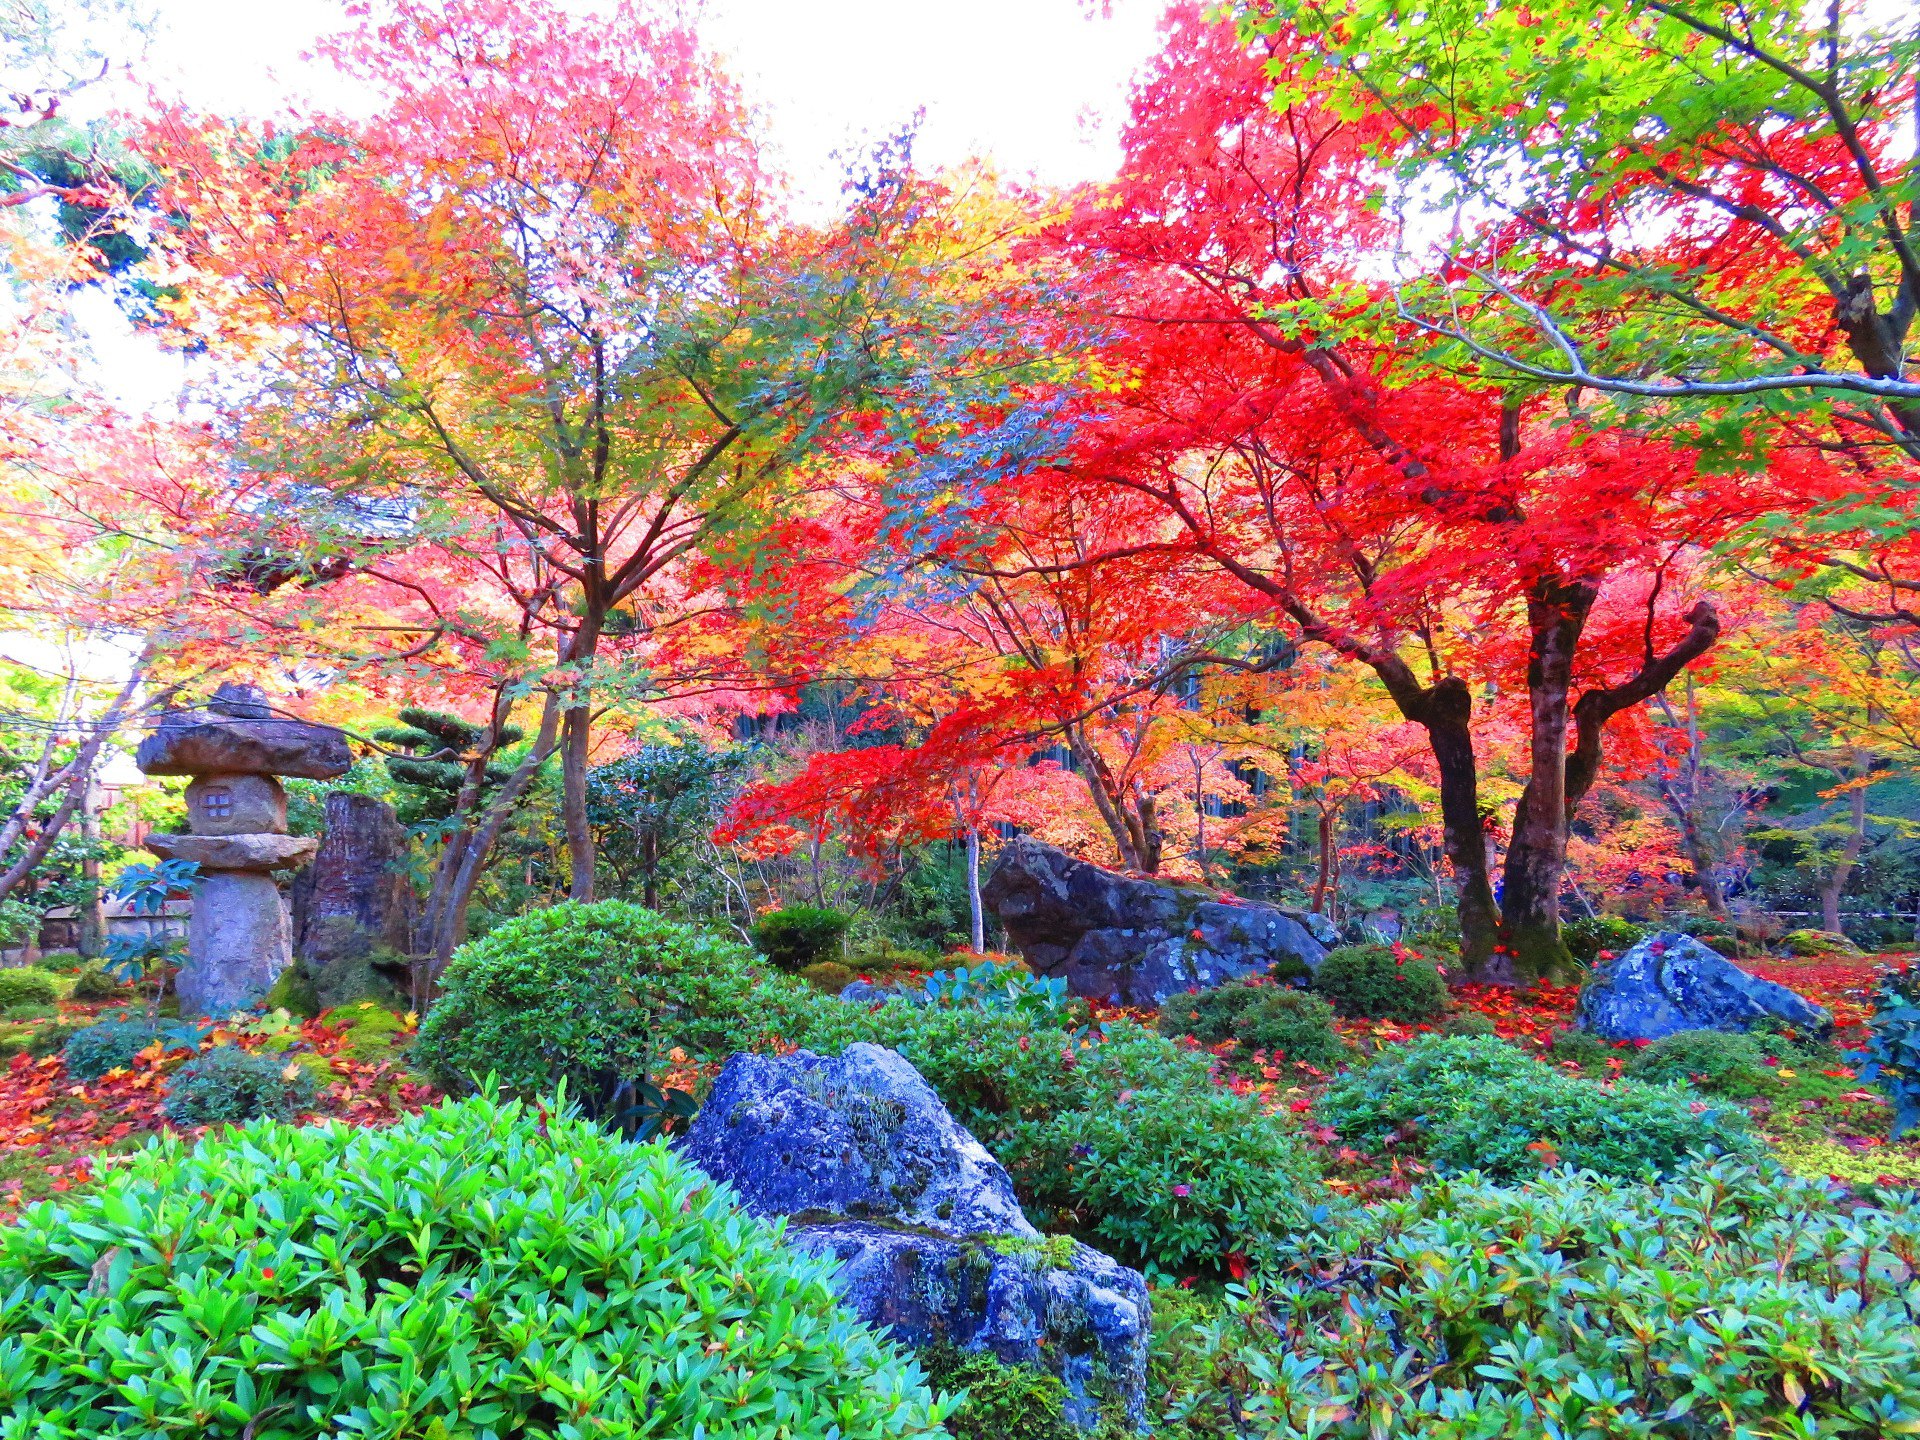 日本の風景 京の紅葉の名所 圓光寺十牛の庭 壁紙19x1440 壁紙館